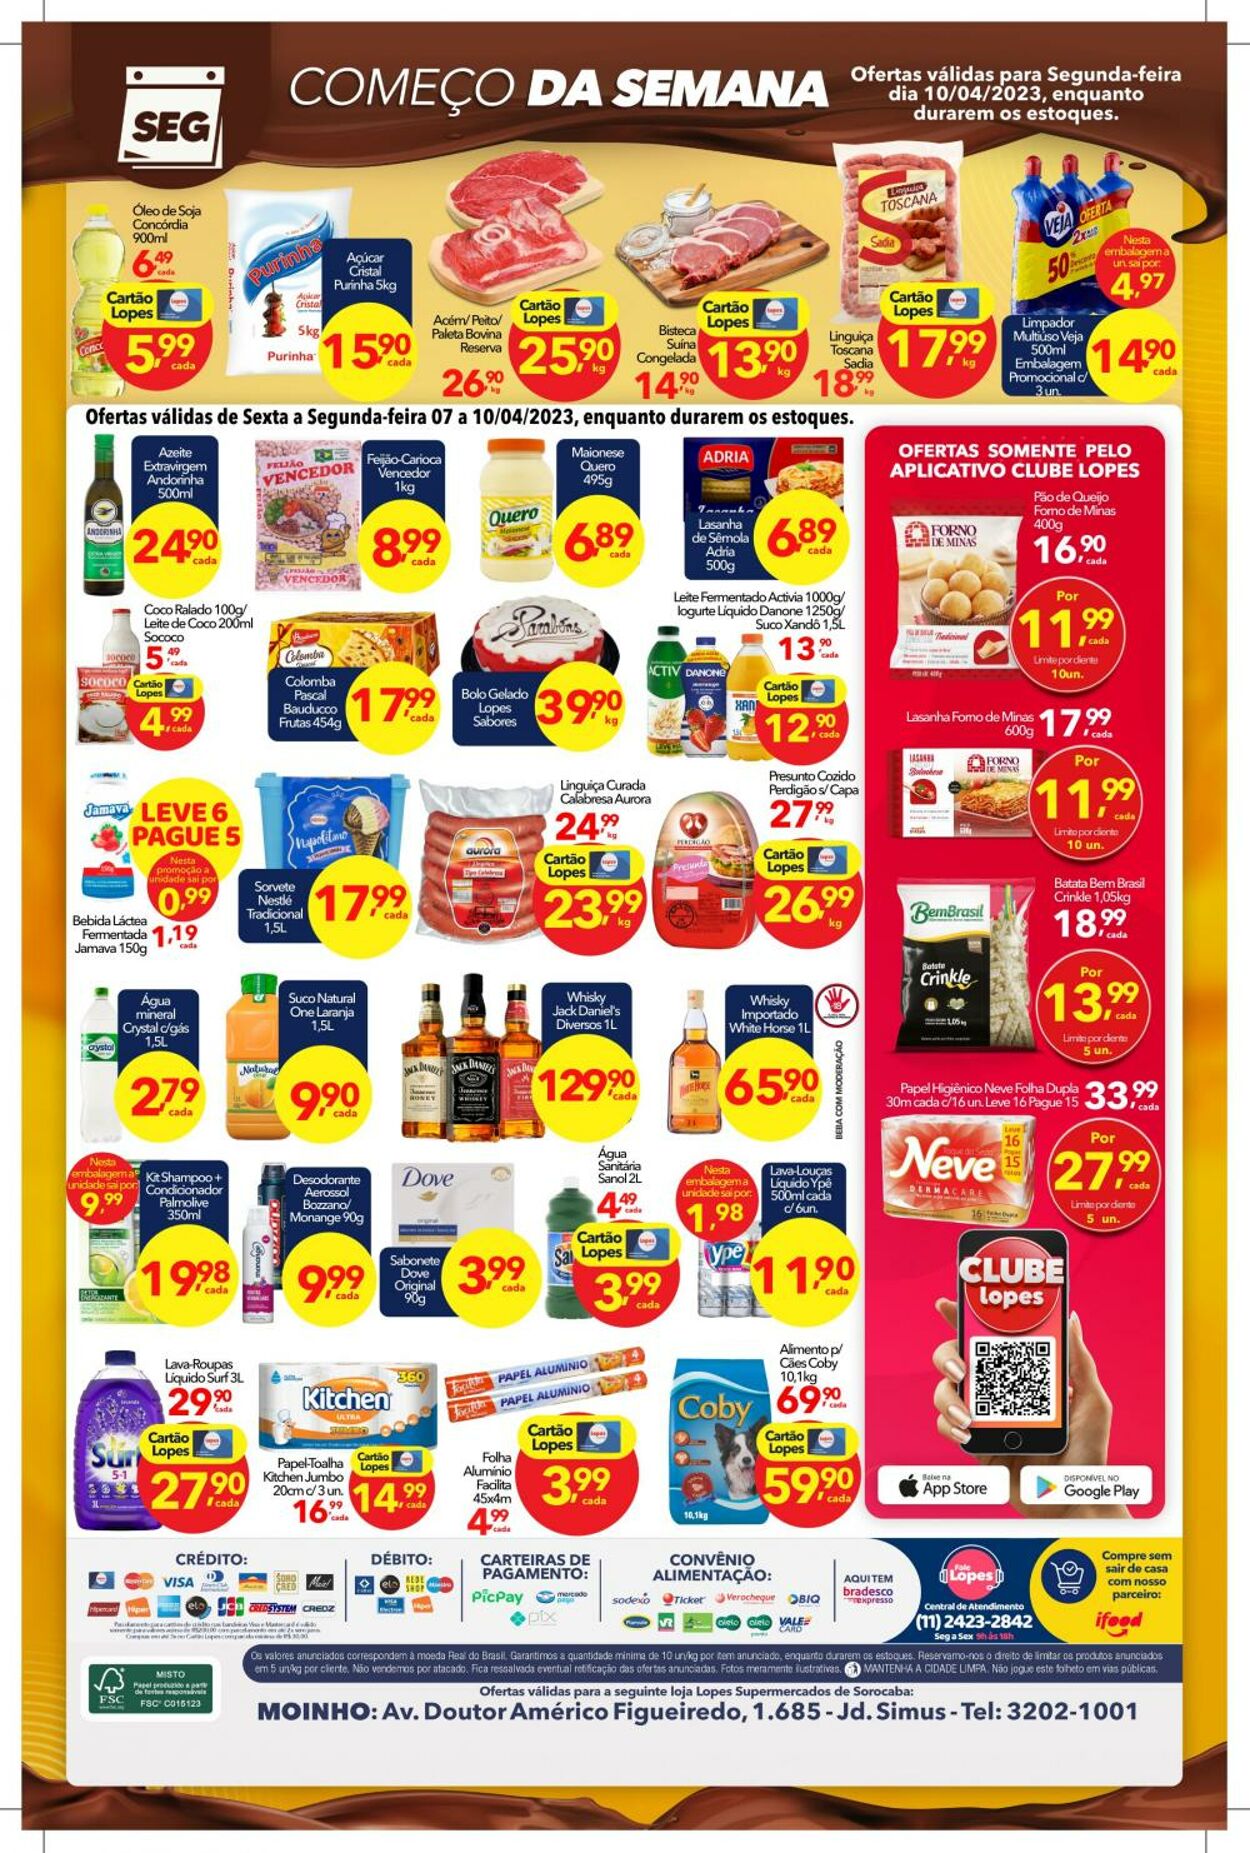 Folheto Lopes Supermercados 07.04.2023 - 10.04.2023